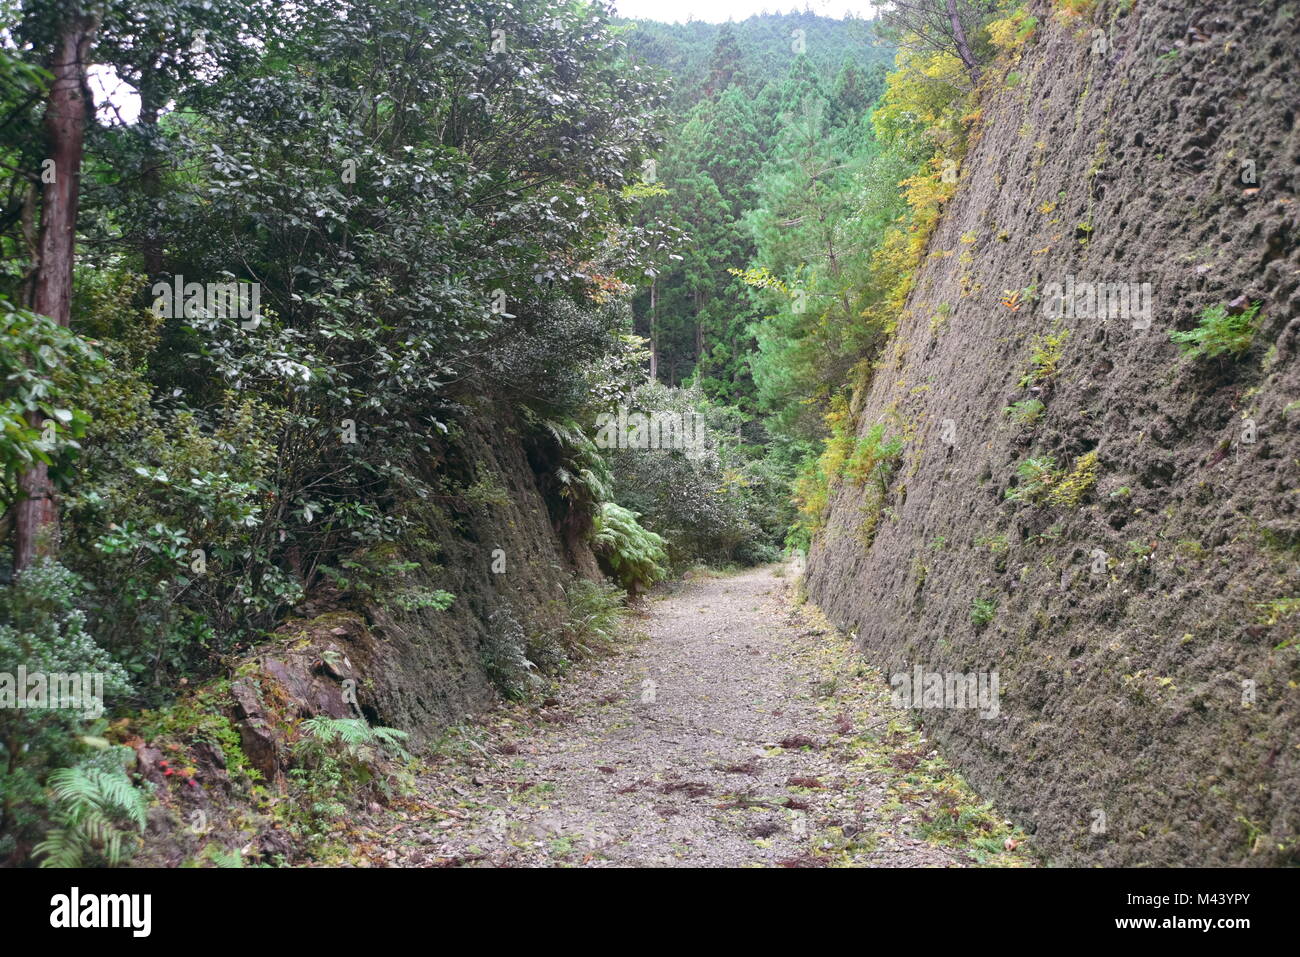 Erstaunlich und spirituellen Japan, wandern die alten 1000-jährige Kumano Kodo" Nakahechi route" als kaiserlicher trail Kii Halbinsel, südlichen Japan bekannt Stockfoto